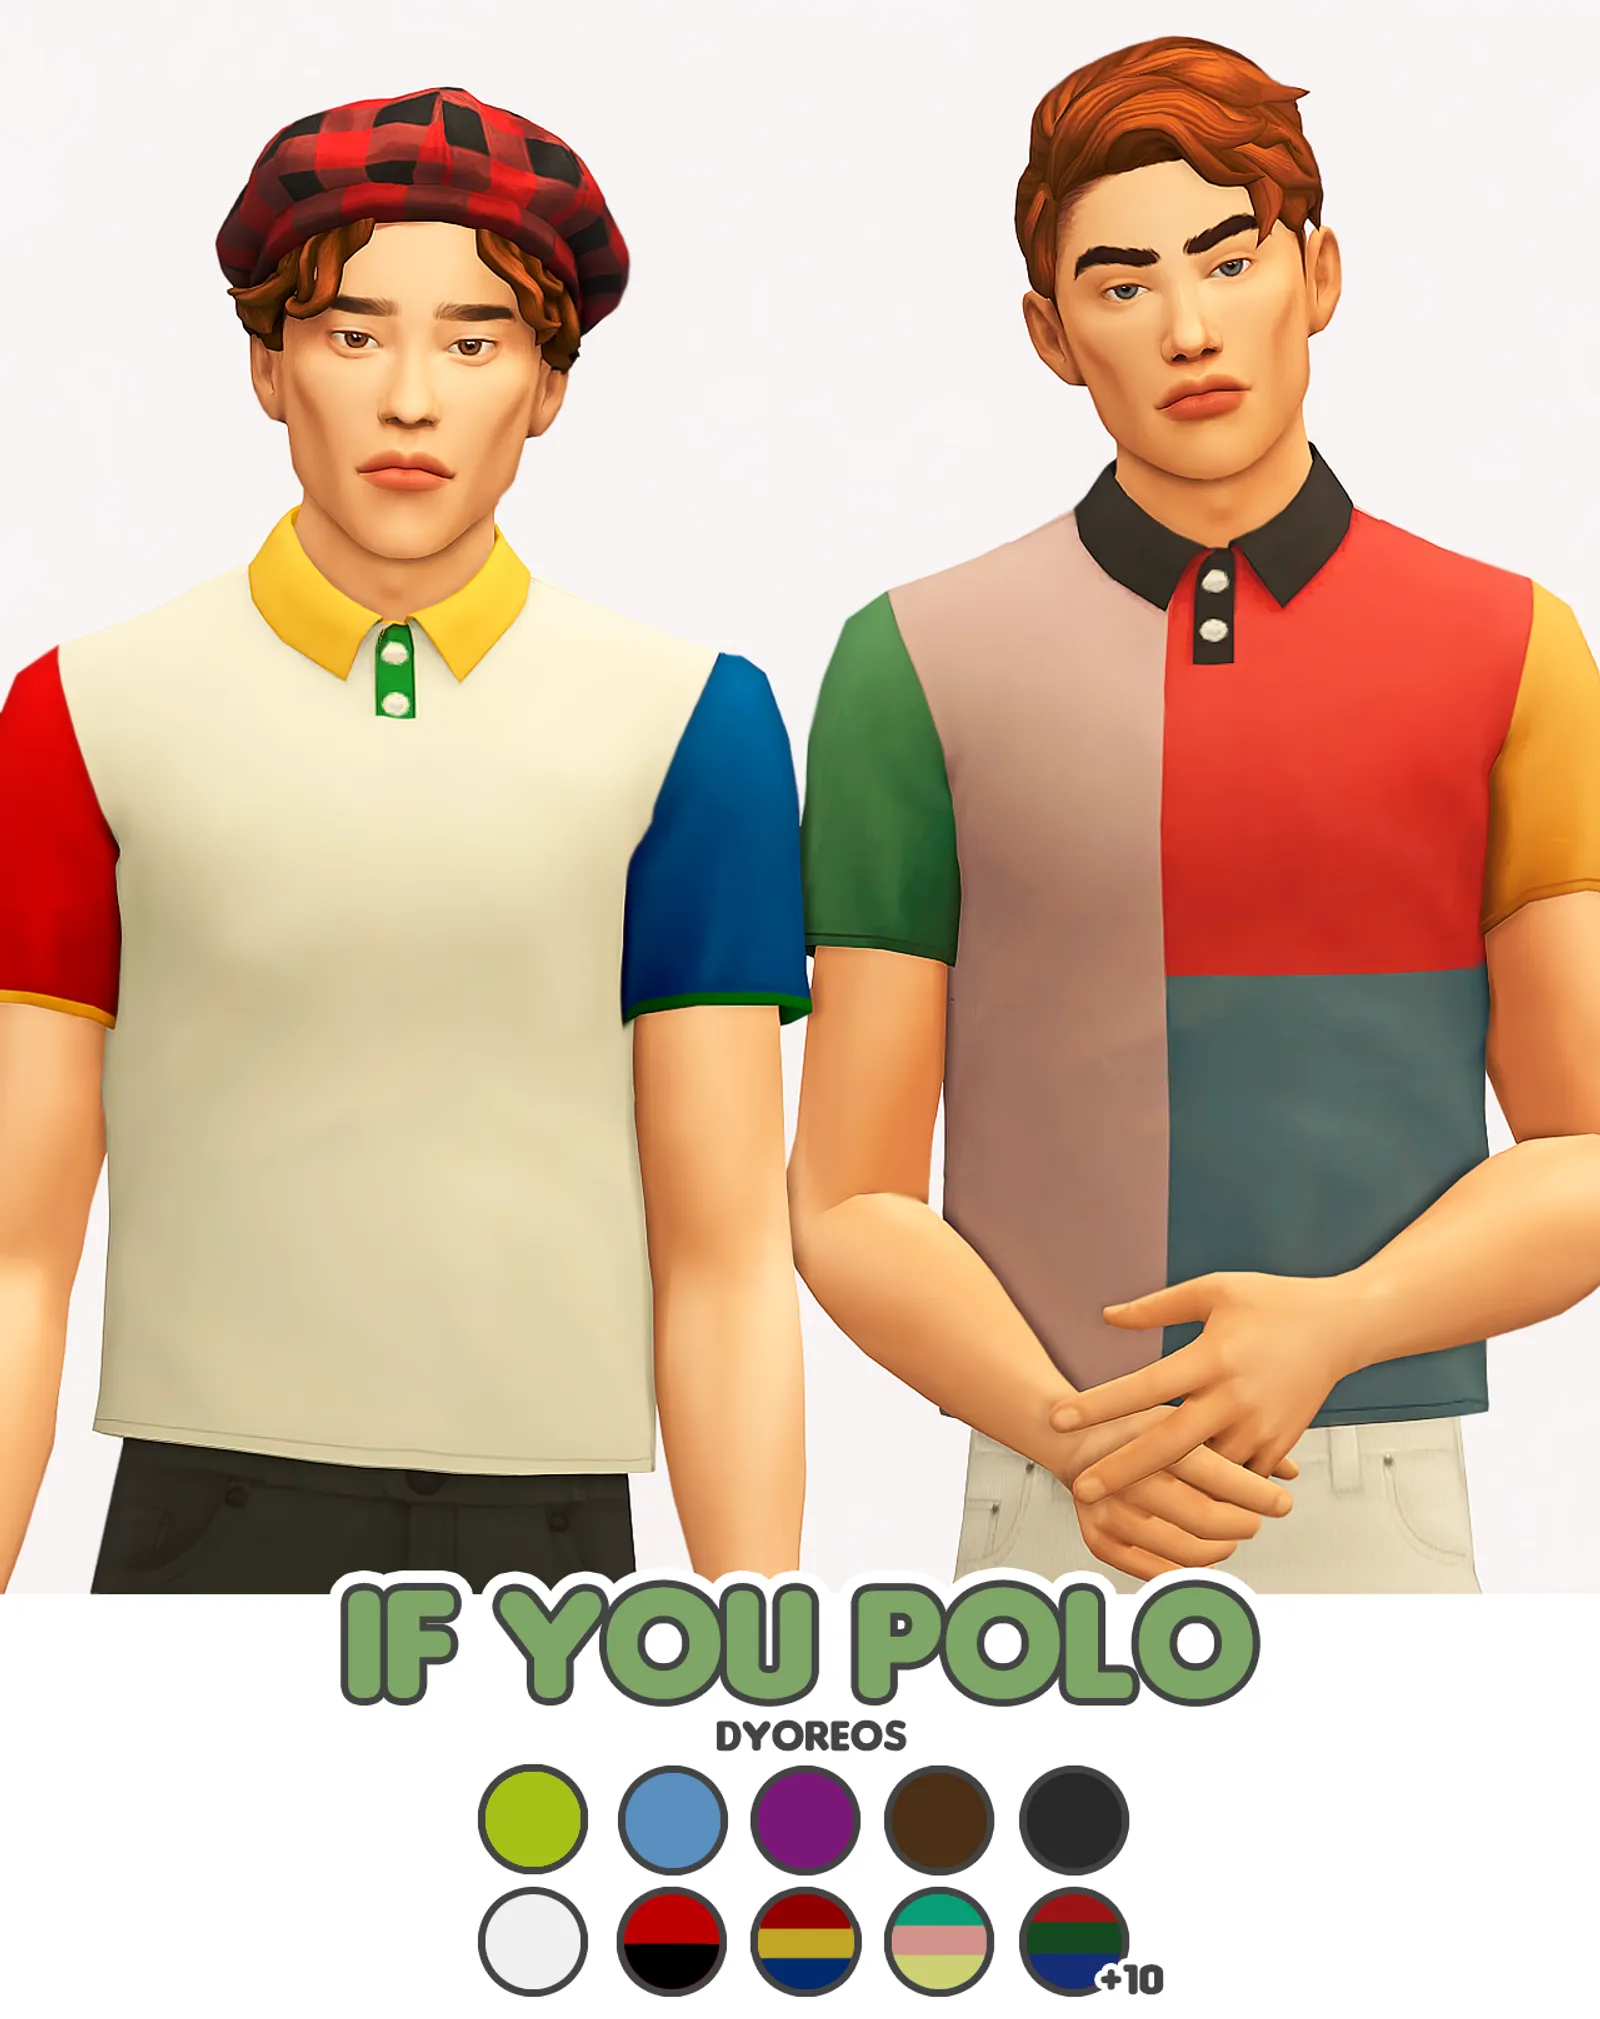 [Dyoreos] If You Polo